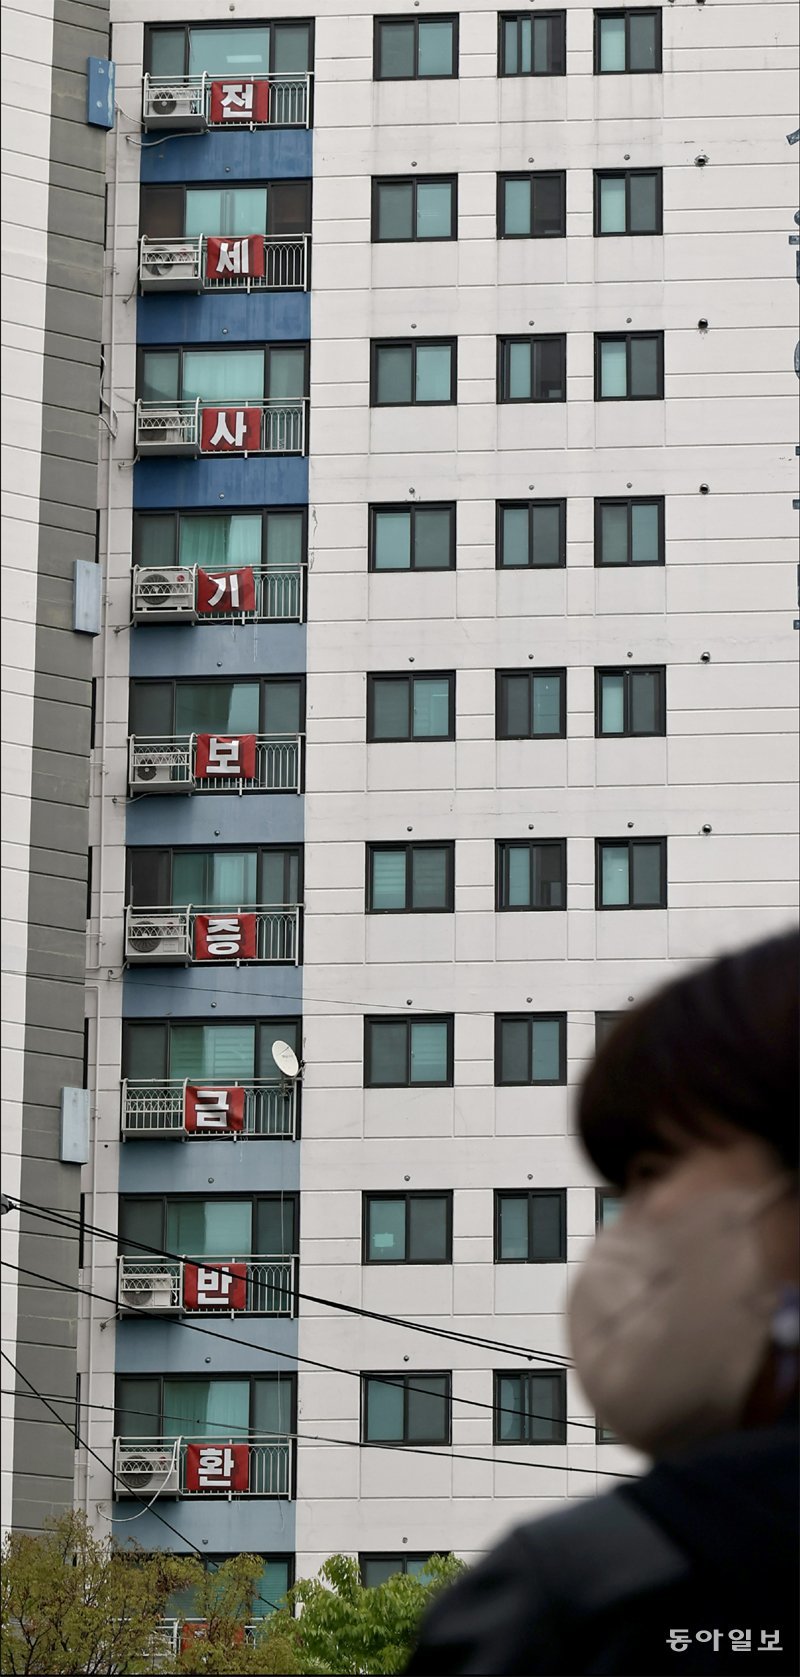 인천 미추홀구의 한 아파트 외벽에 4월 18일 “전세사기 보증금 반환하라”는 현수막이 걸려 있다. 전날 아파트에 거주하던 전세사기 피해자 30대 여성이 숨진 채 발견됐다. 양회성 기자 yohan@donga.com